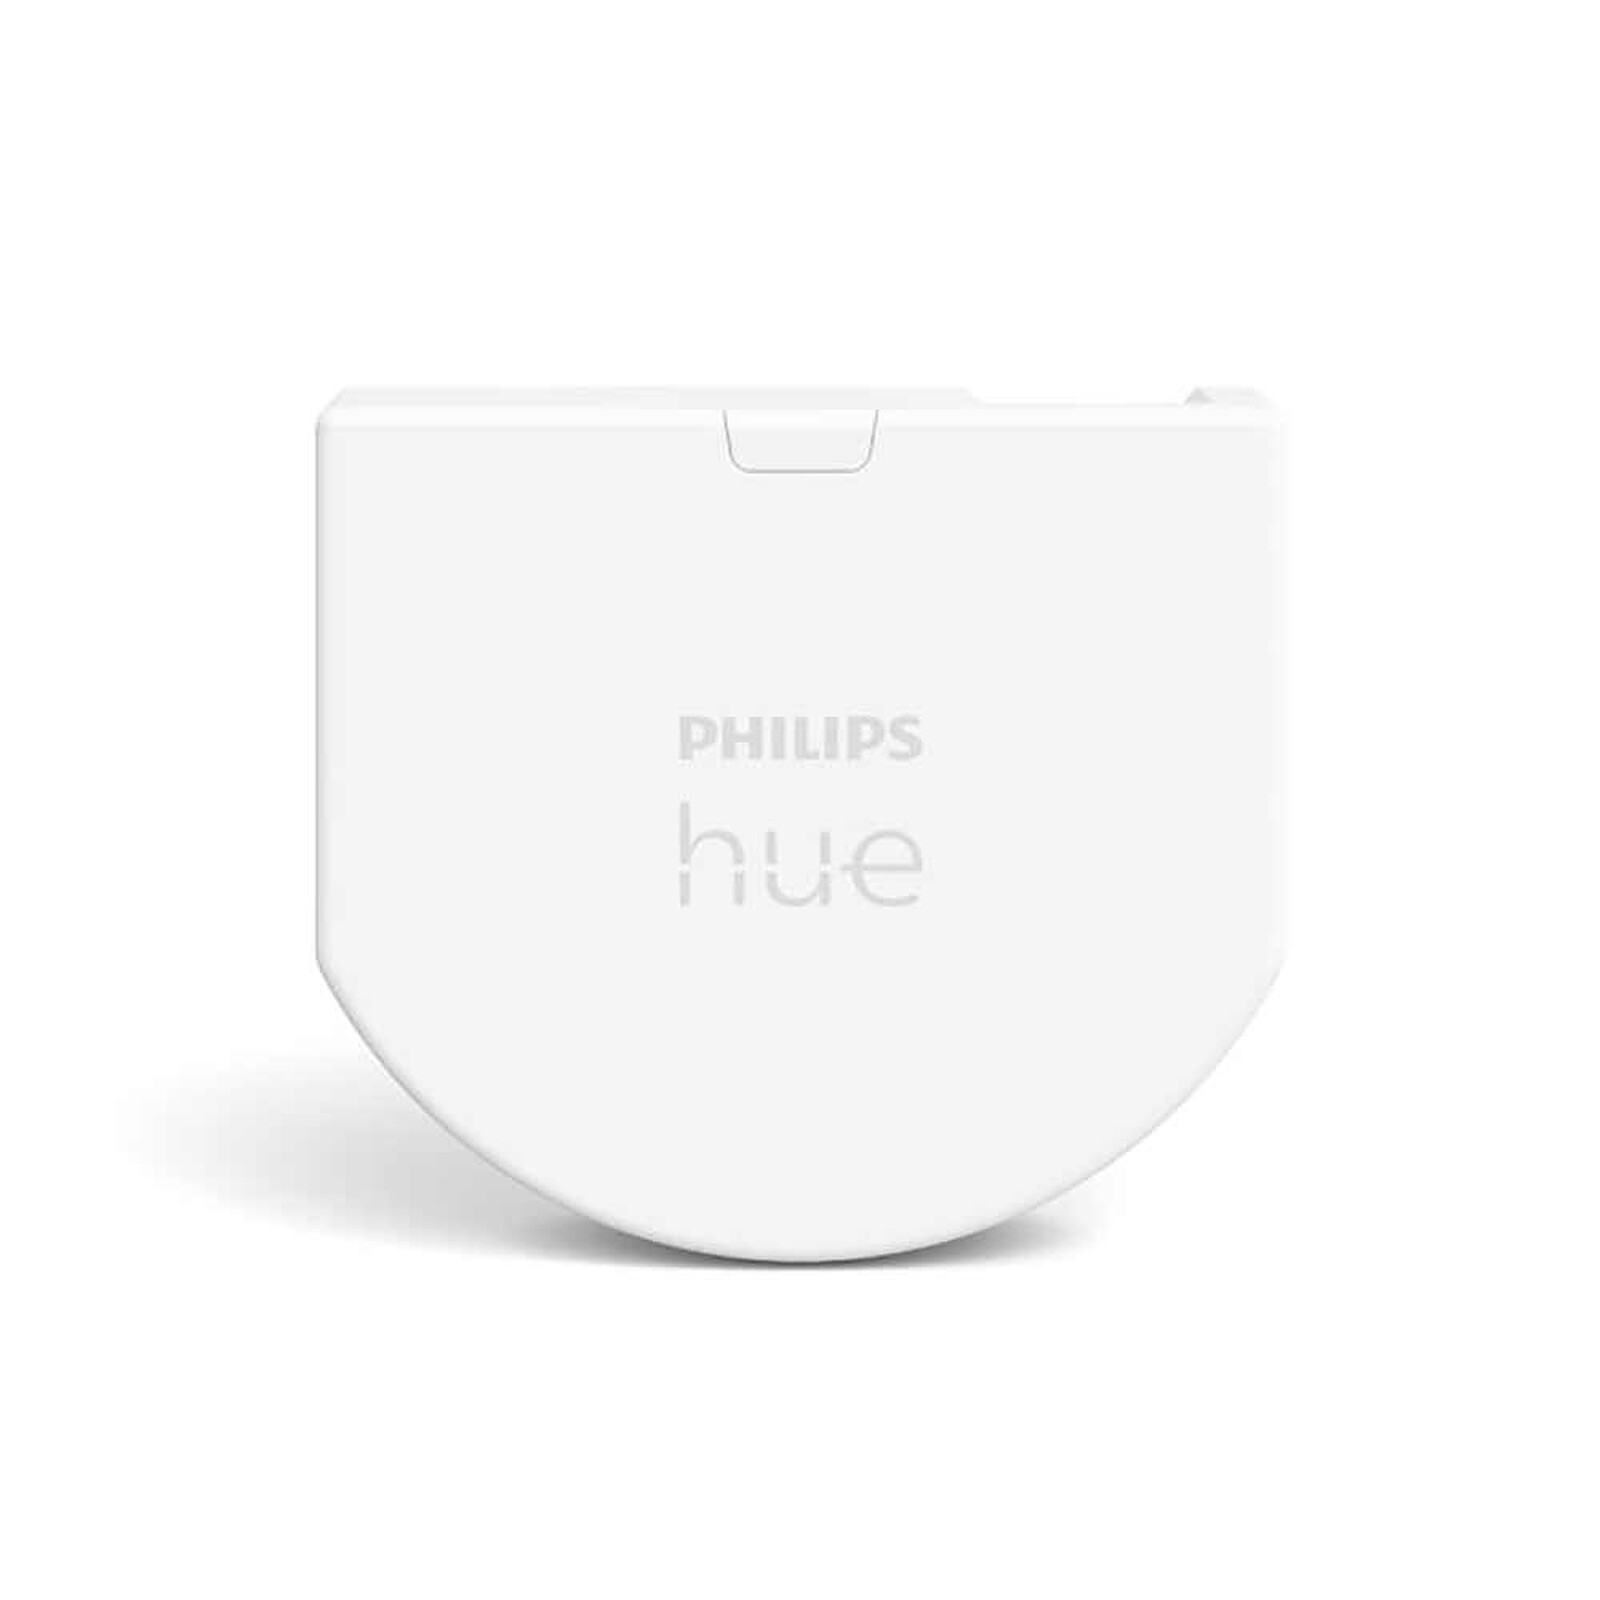 Philips Hue bouton télécommande Tap Dial Switch, blanc, permet le